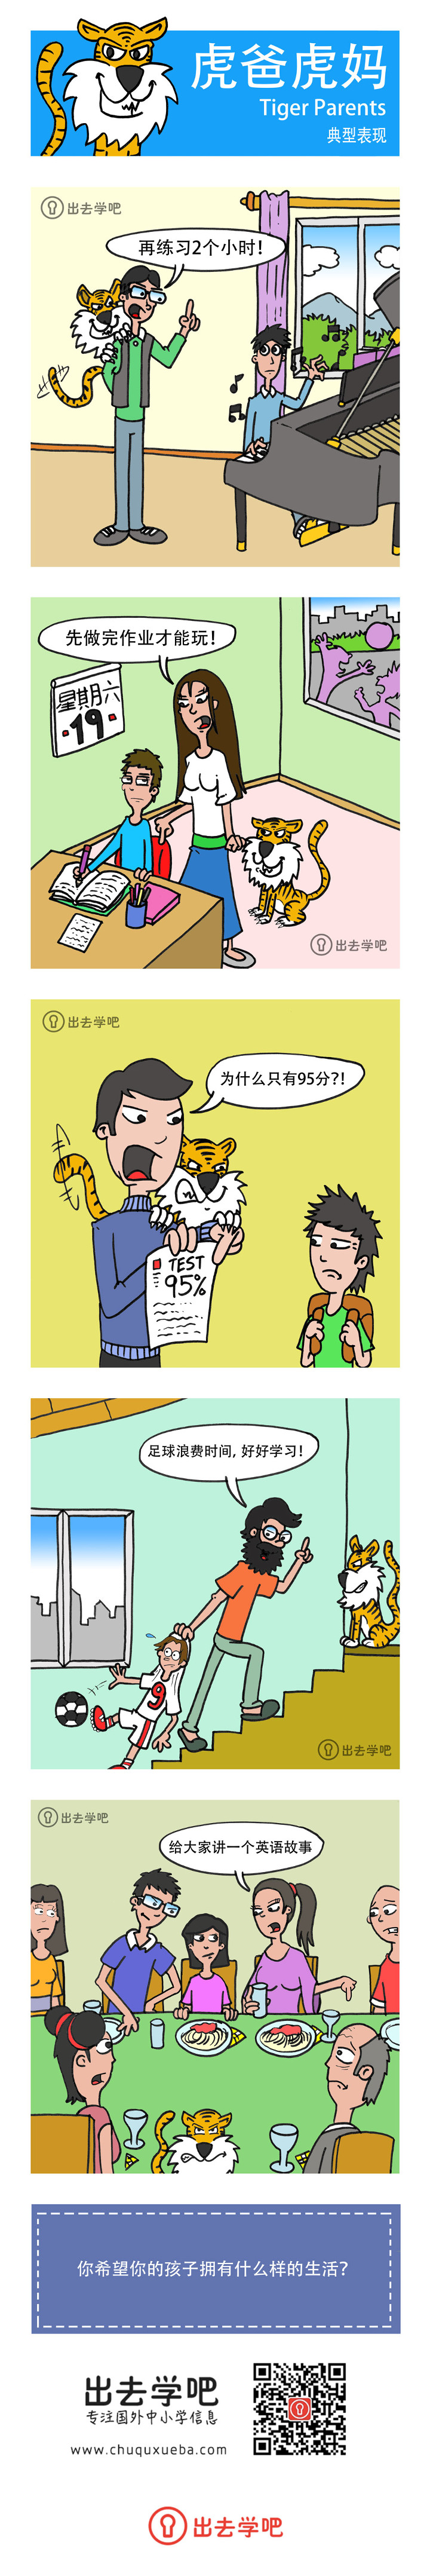 虎爸虎妈 (Tiger Parents) 典型表现的漫画